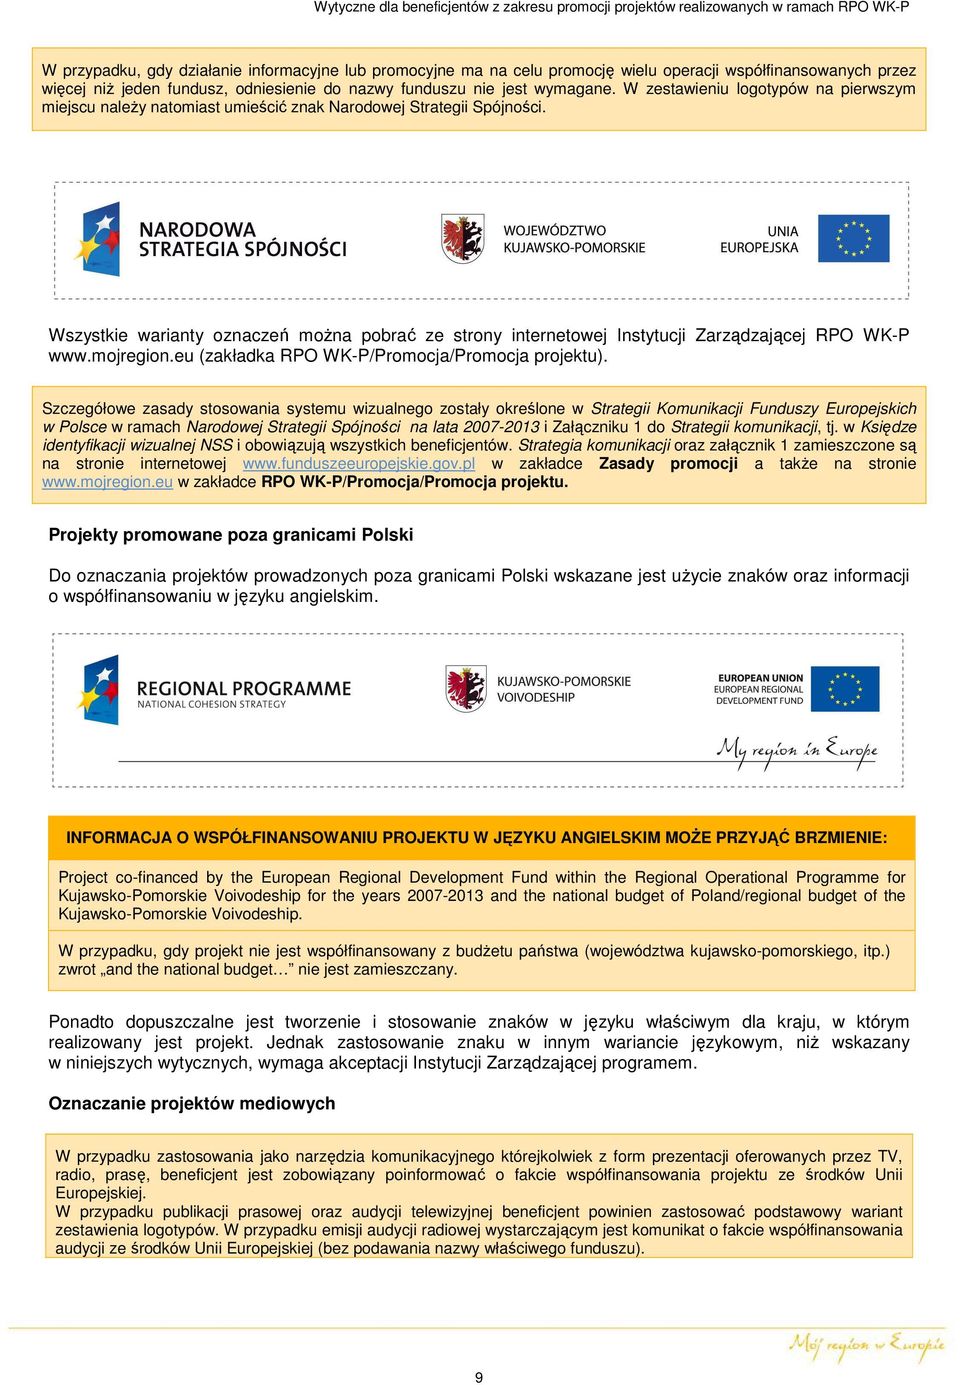 Wszystkie warianty oznaczeń można pobrać ze strony internetowej Instytucji Zarządzającej RPO WK-P www.mojregion.eu (zakładka RPO WK-P/Promocja/Promocja projektu).